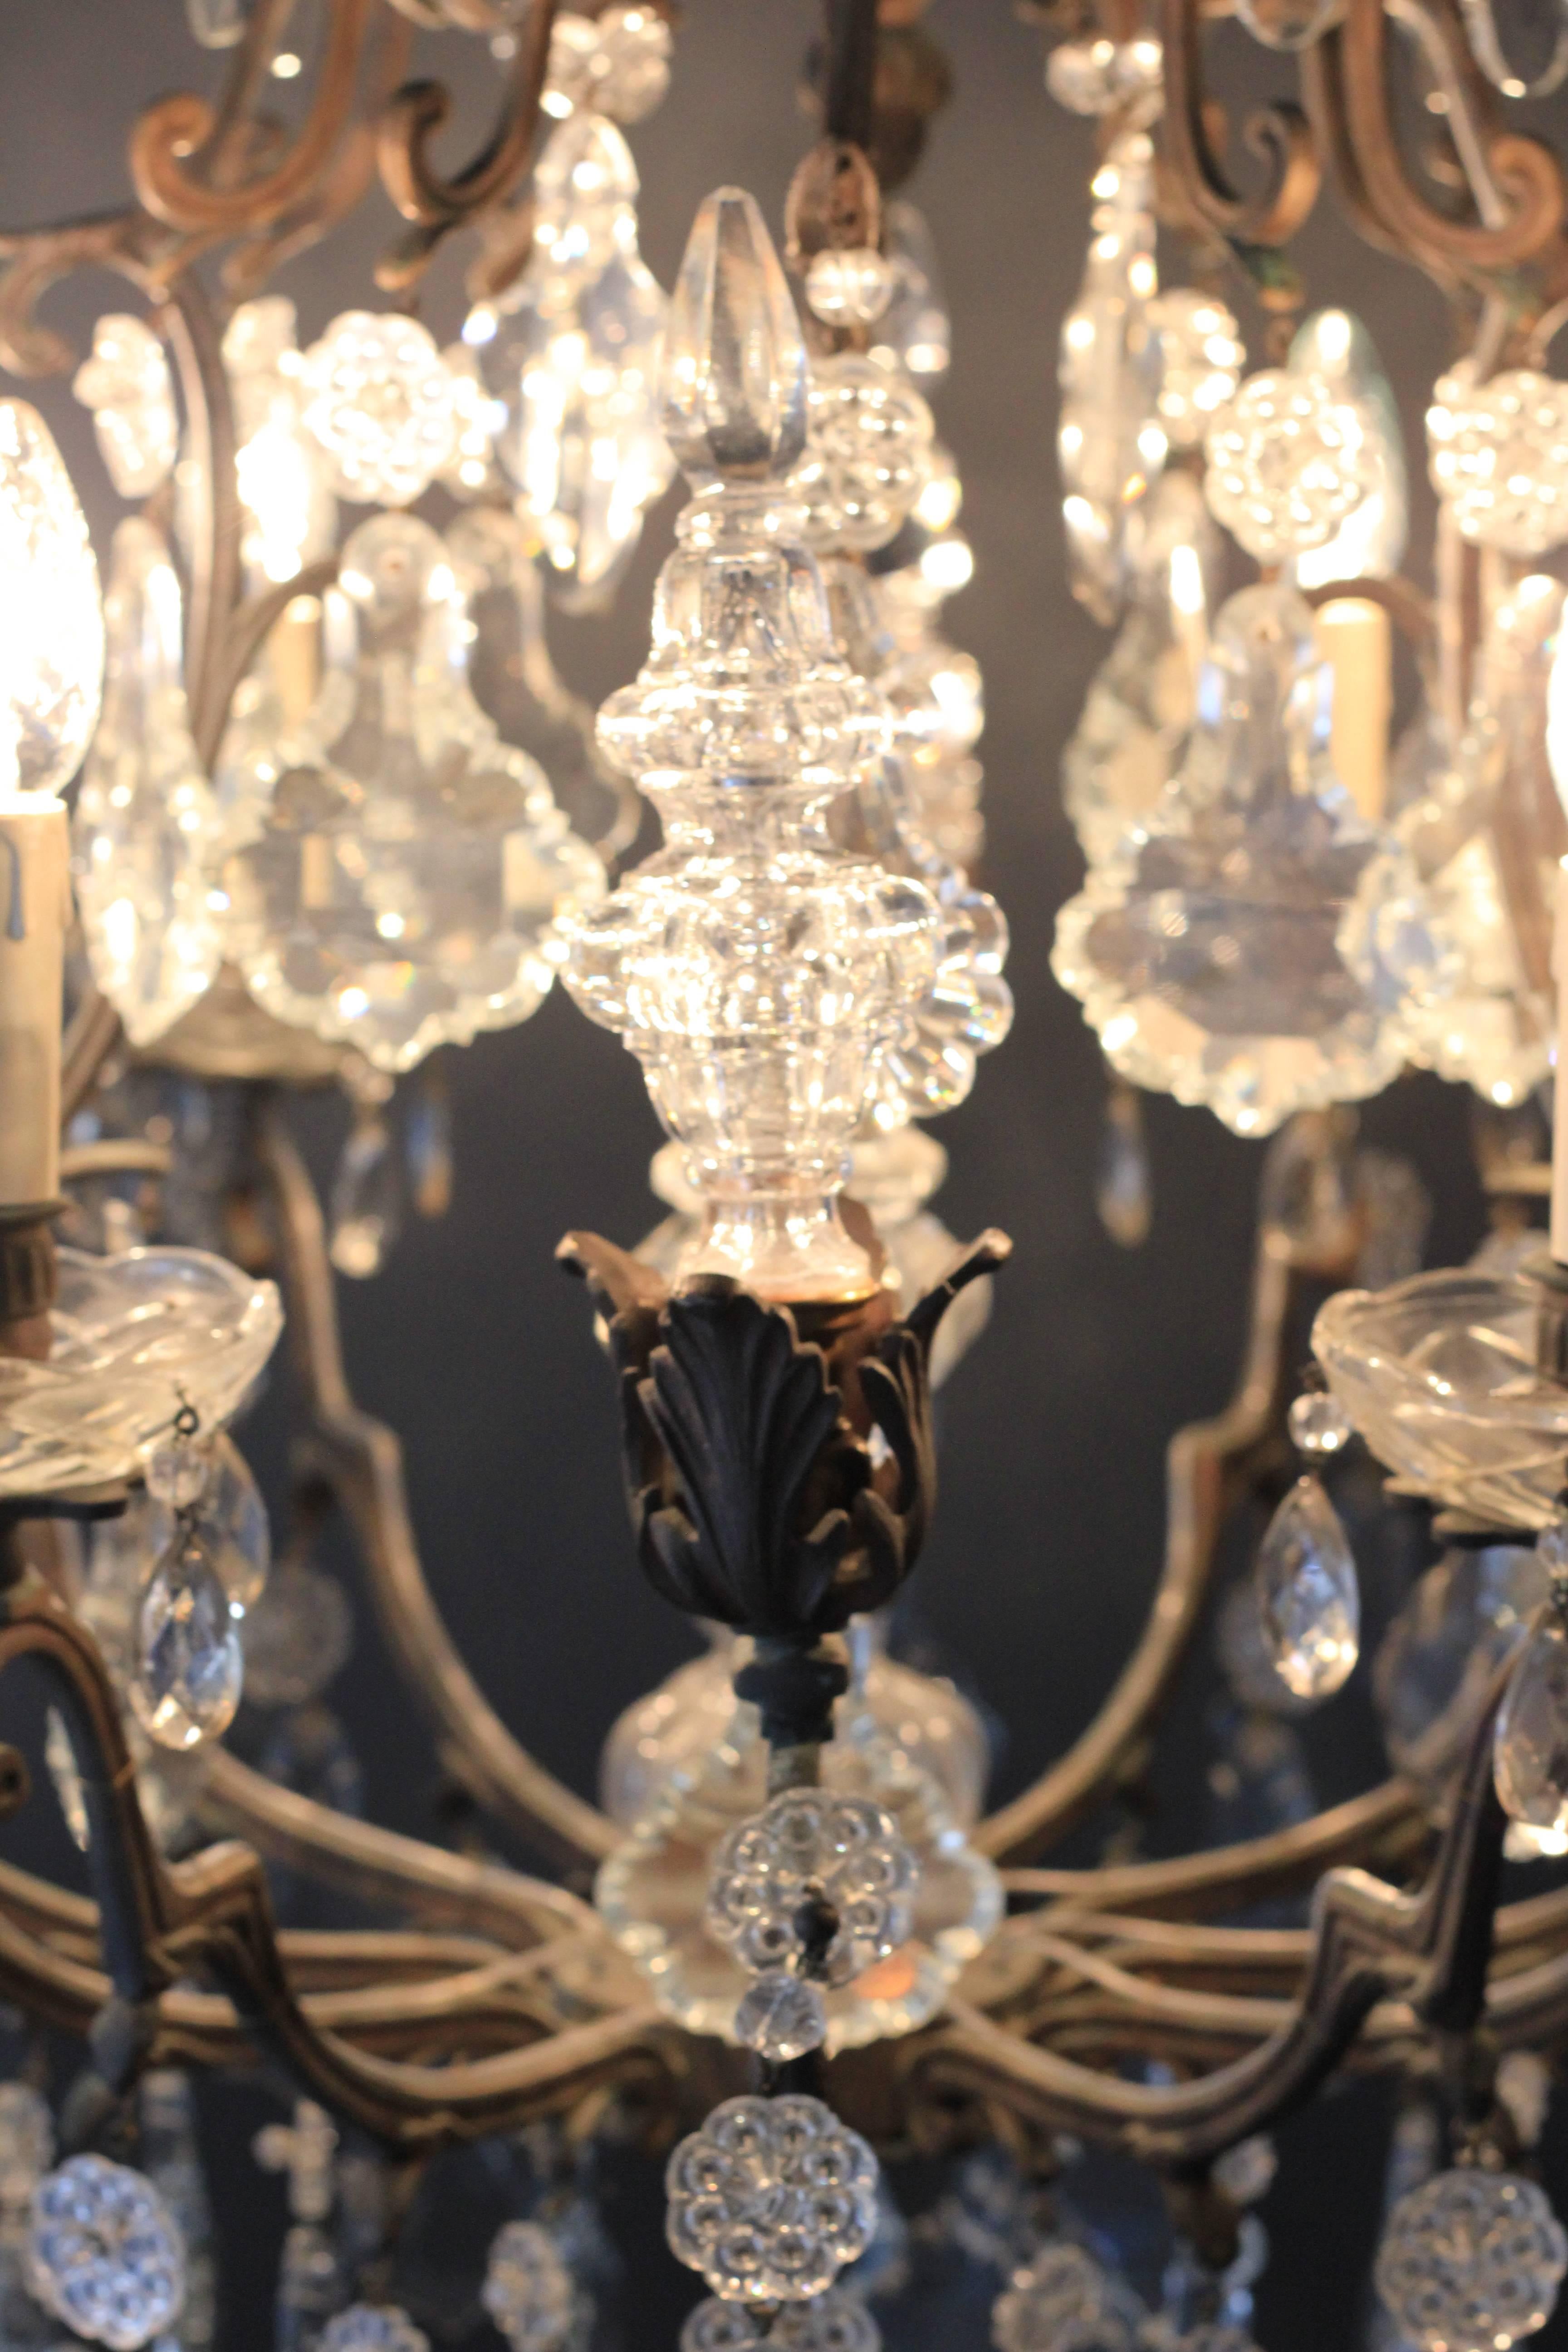 Fine Rarity Crystal Chandelier 1920 Lustre Antique Ceiling Lamp Art Nouveau WoW (Art nouveau)